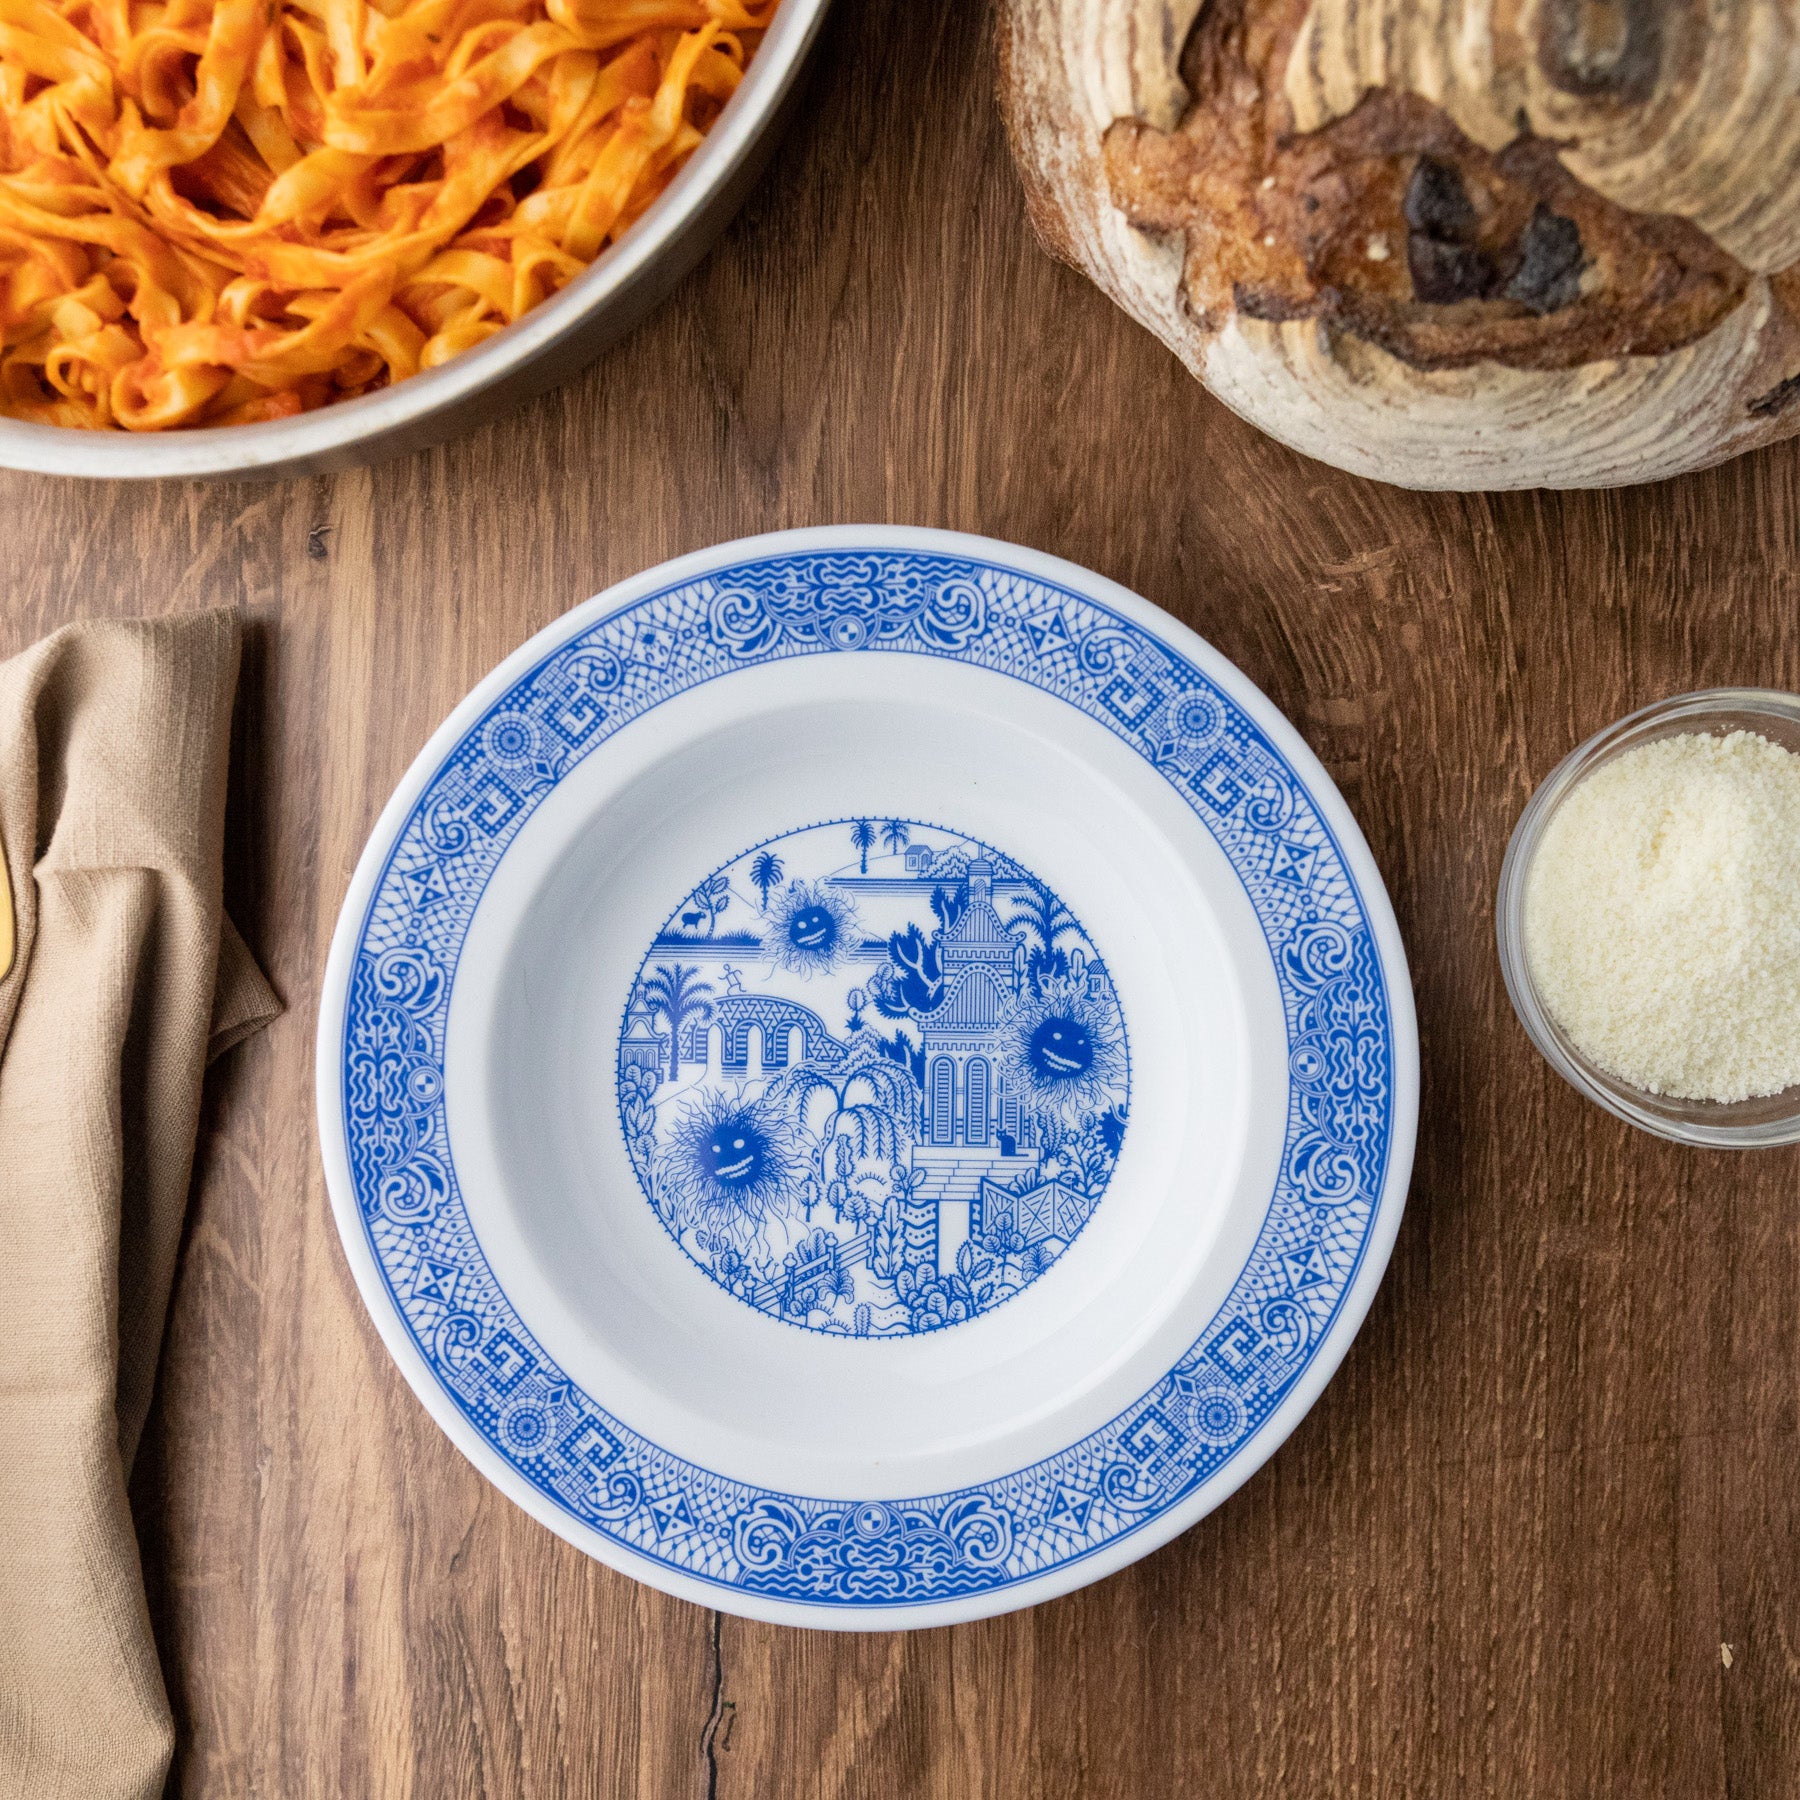 Nana's Blue and White Dishes: Shallot Confit